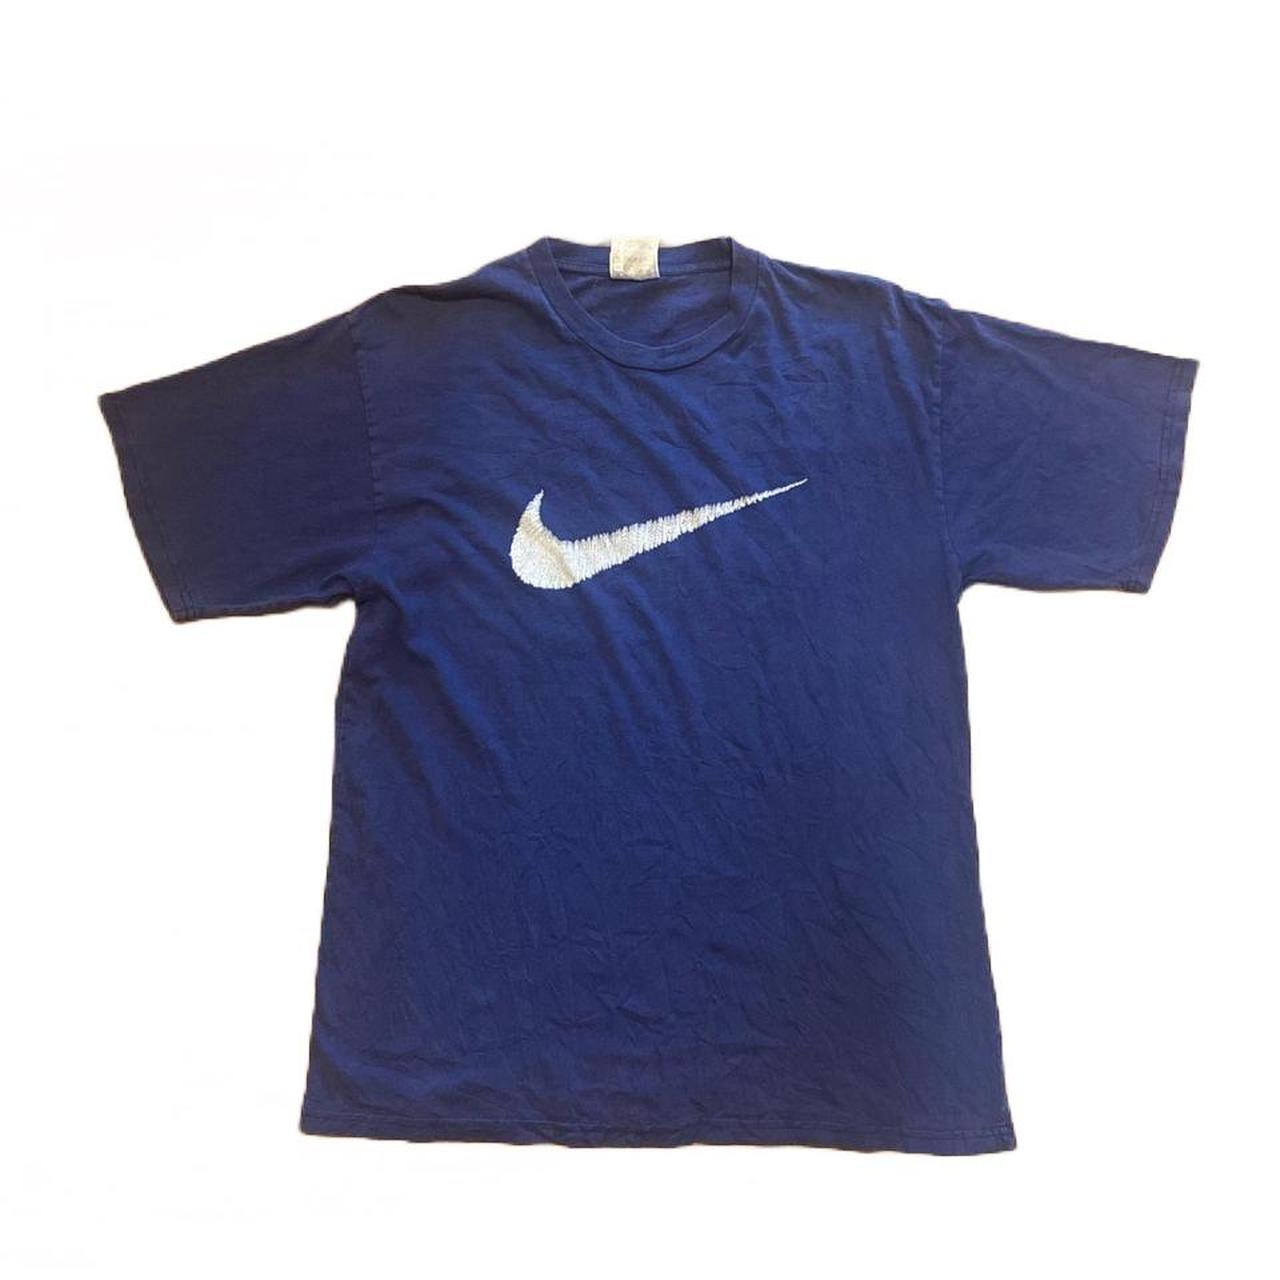 Vintage navy blue Nike tee. Staple piece in a good... - Depop